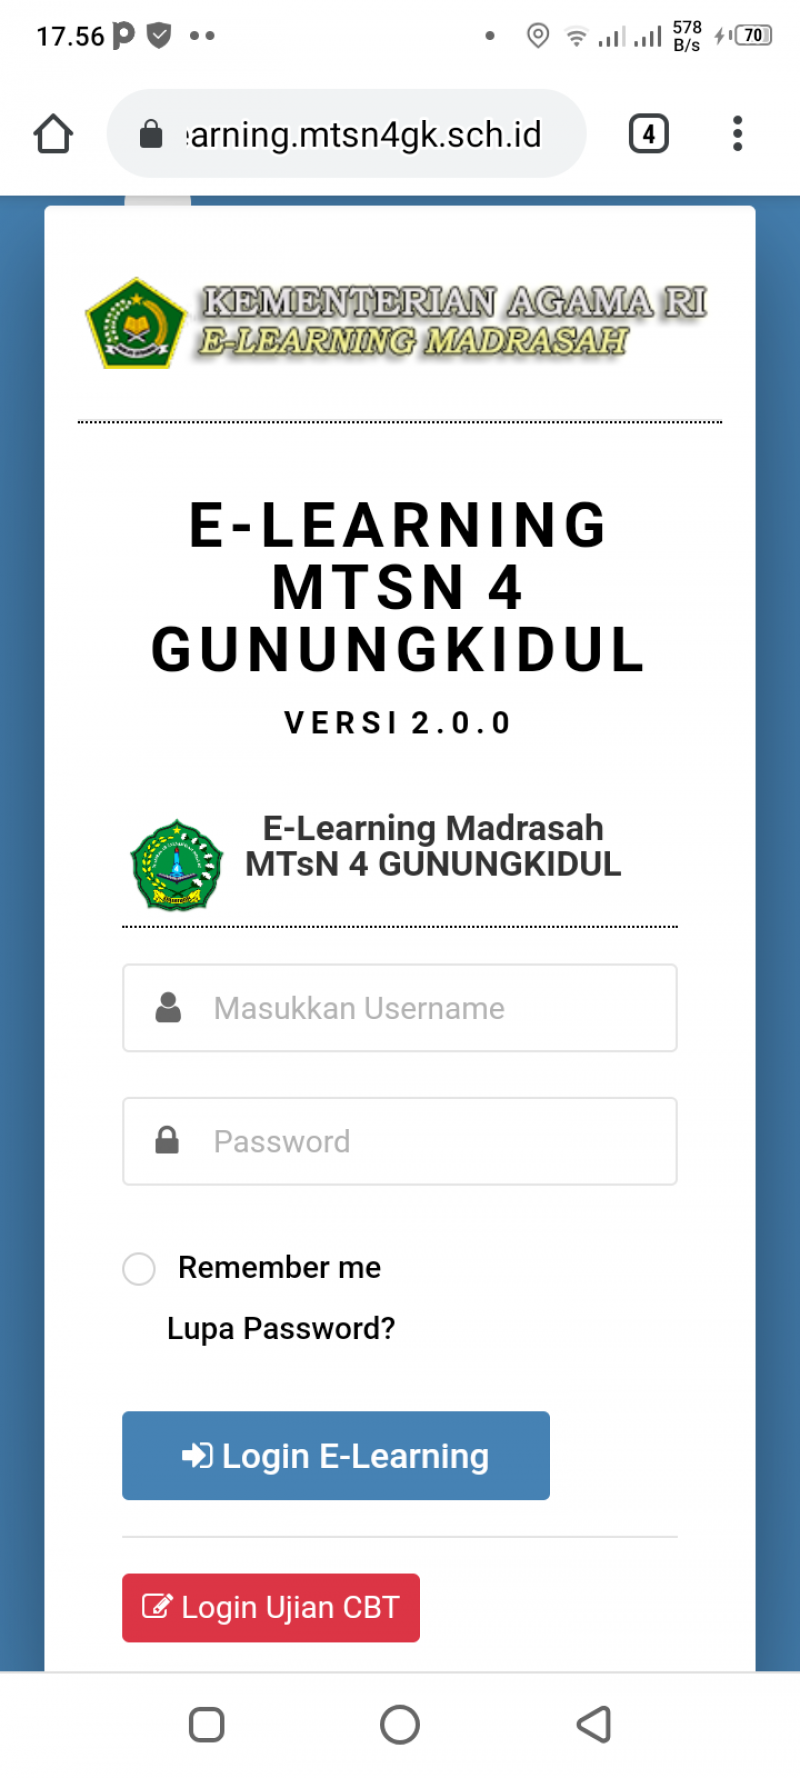 MTsN 4 Gunungkidul Sukses Implementasikan E-Learning